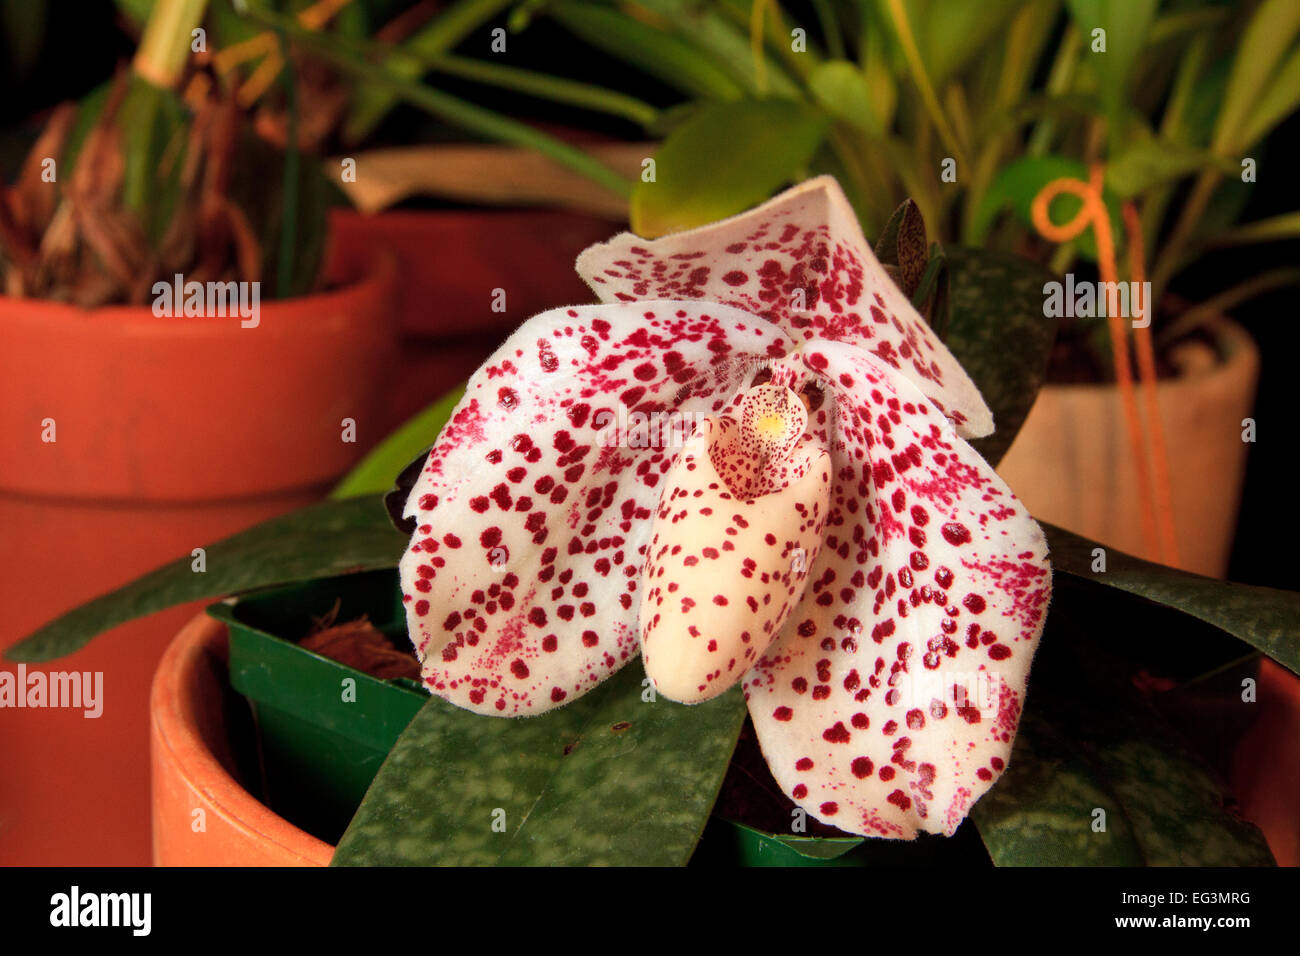 Paphiopedilum bellatulum orchid flower Stock Photo